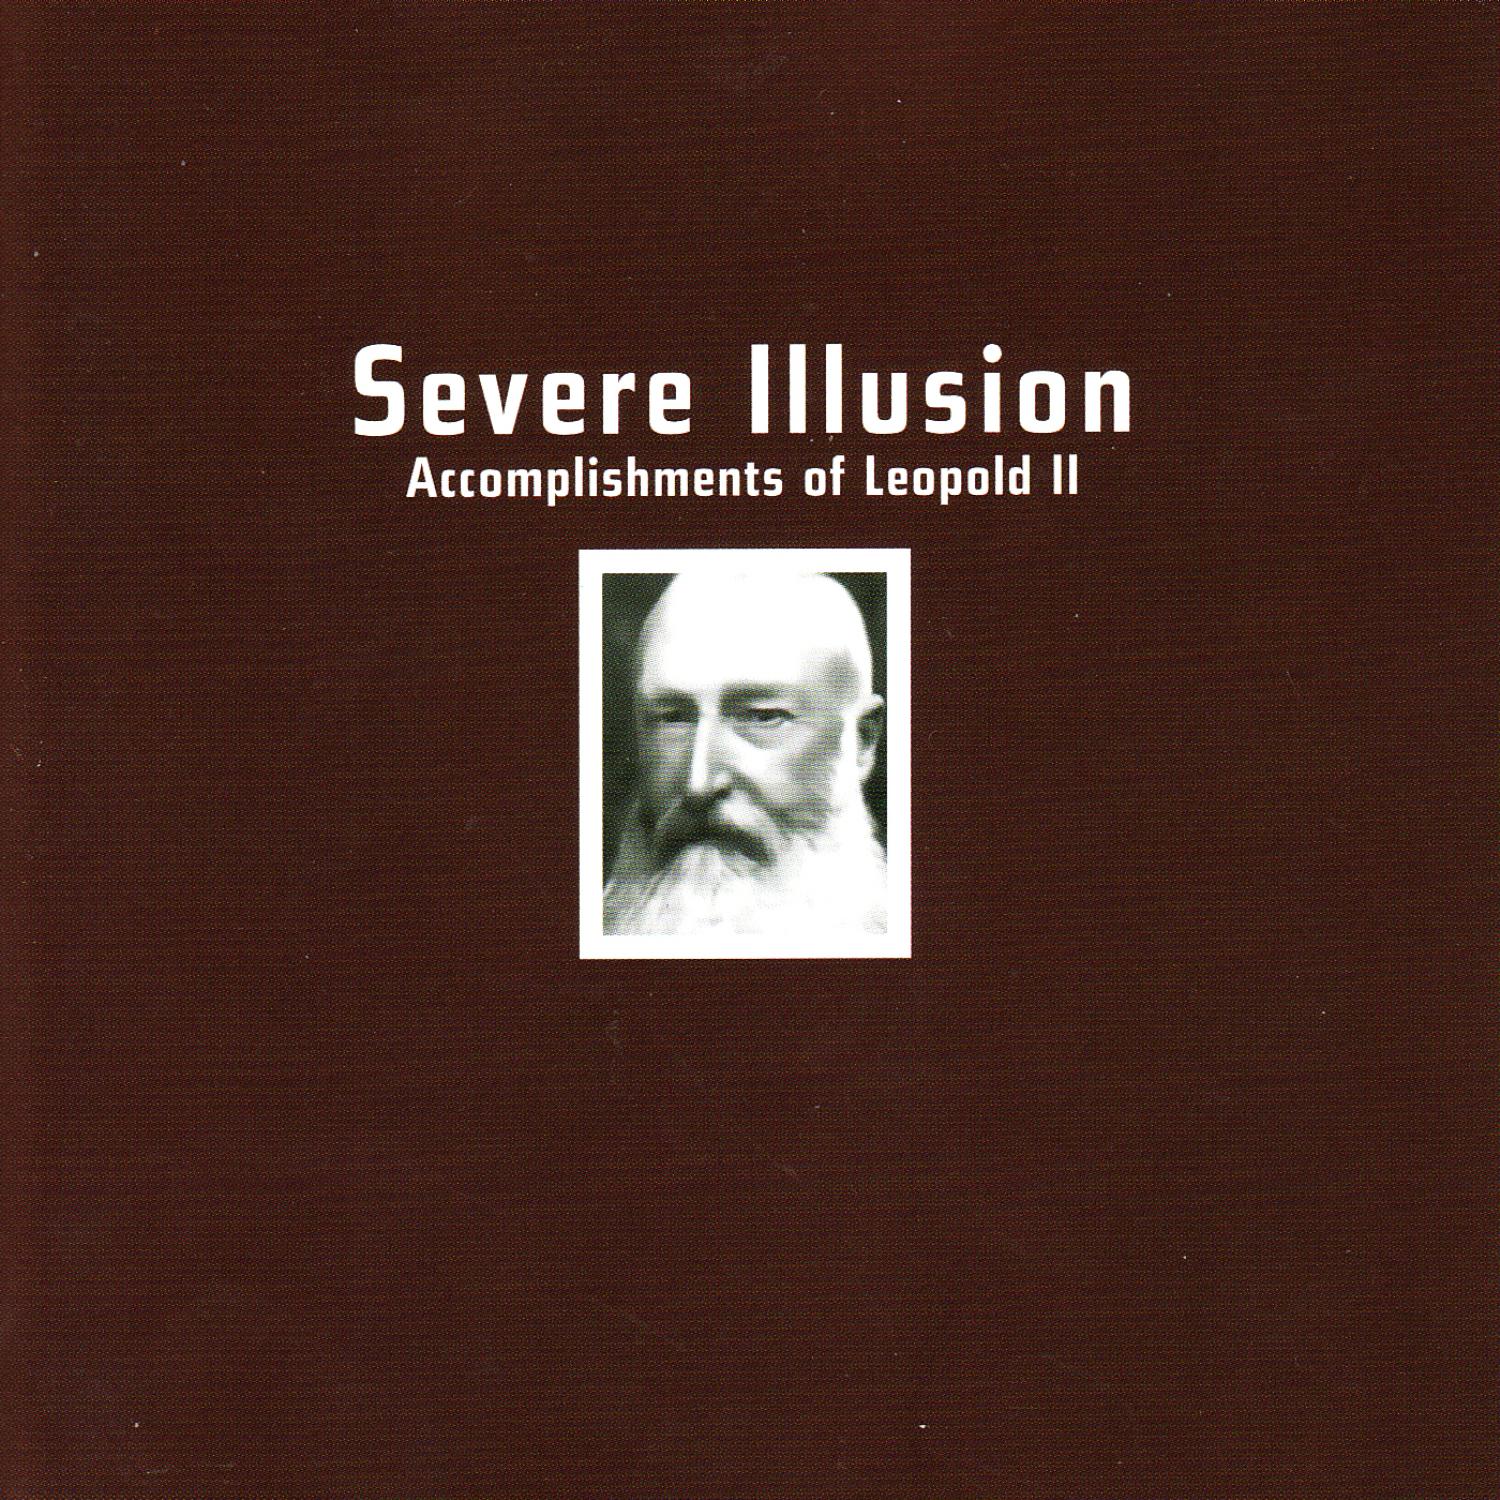 Severe Illusion - Open Rebellion